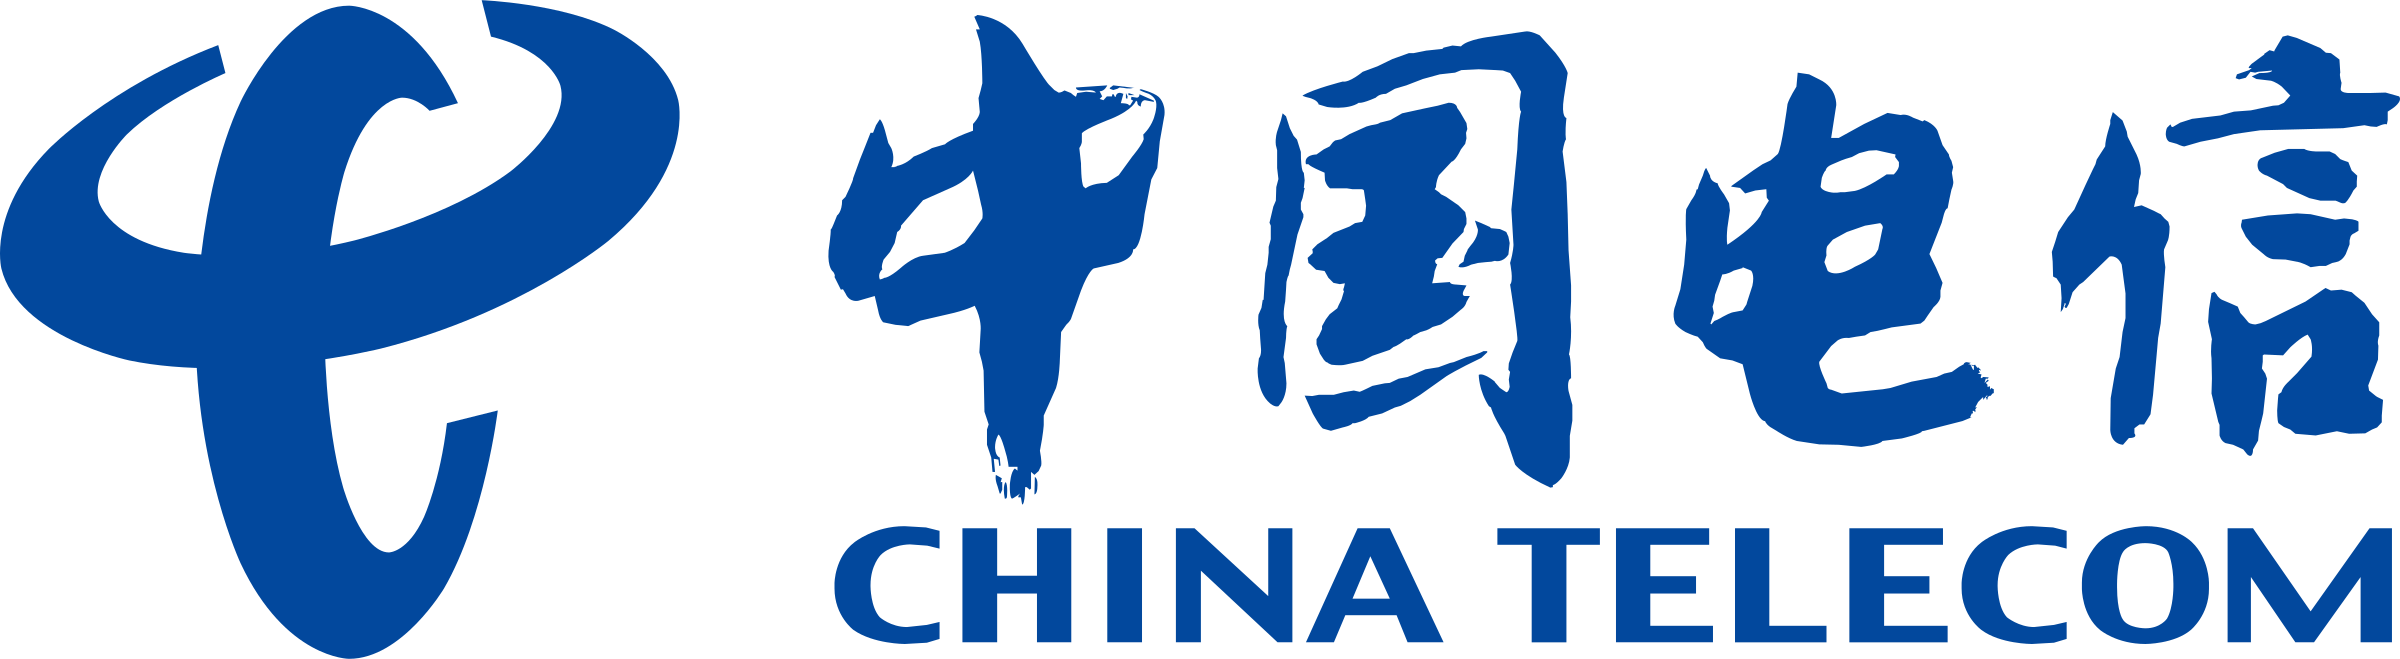 china-telecom-logo-png-transparent